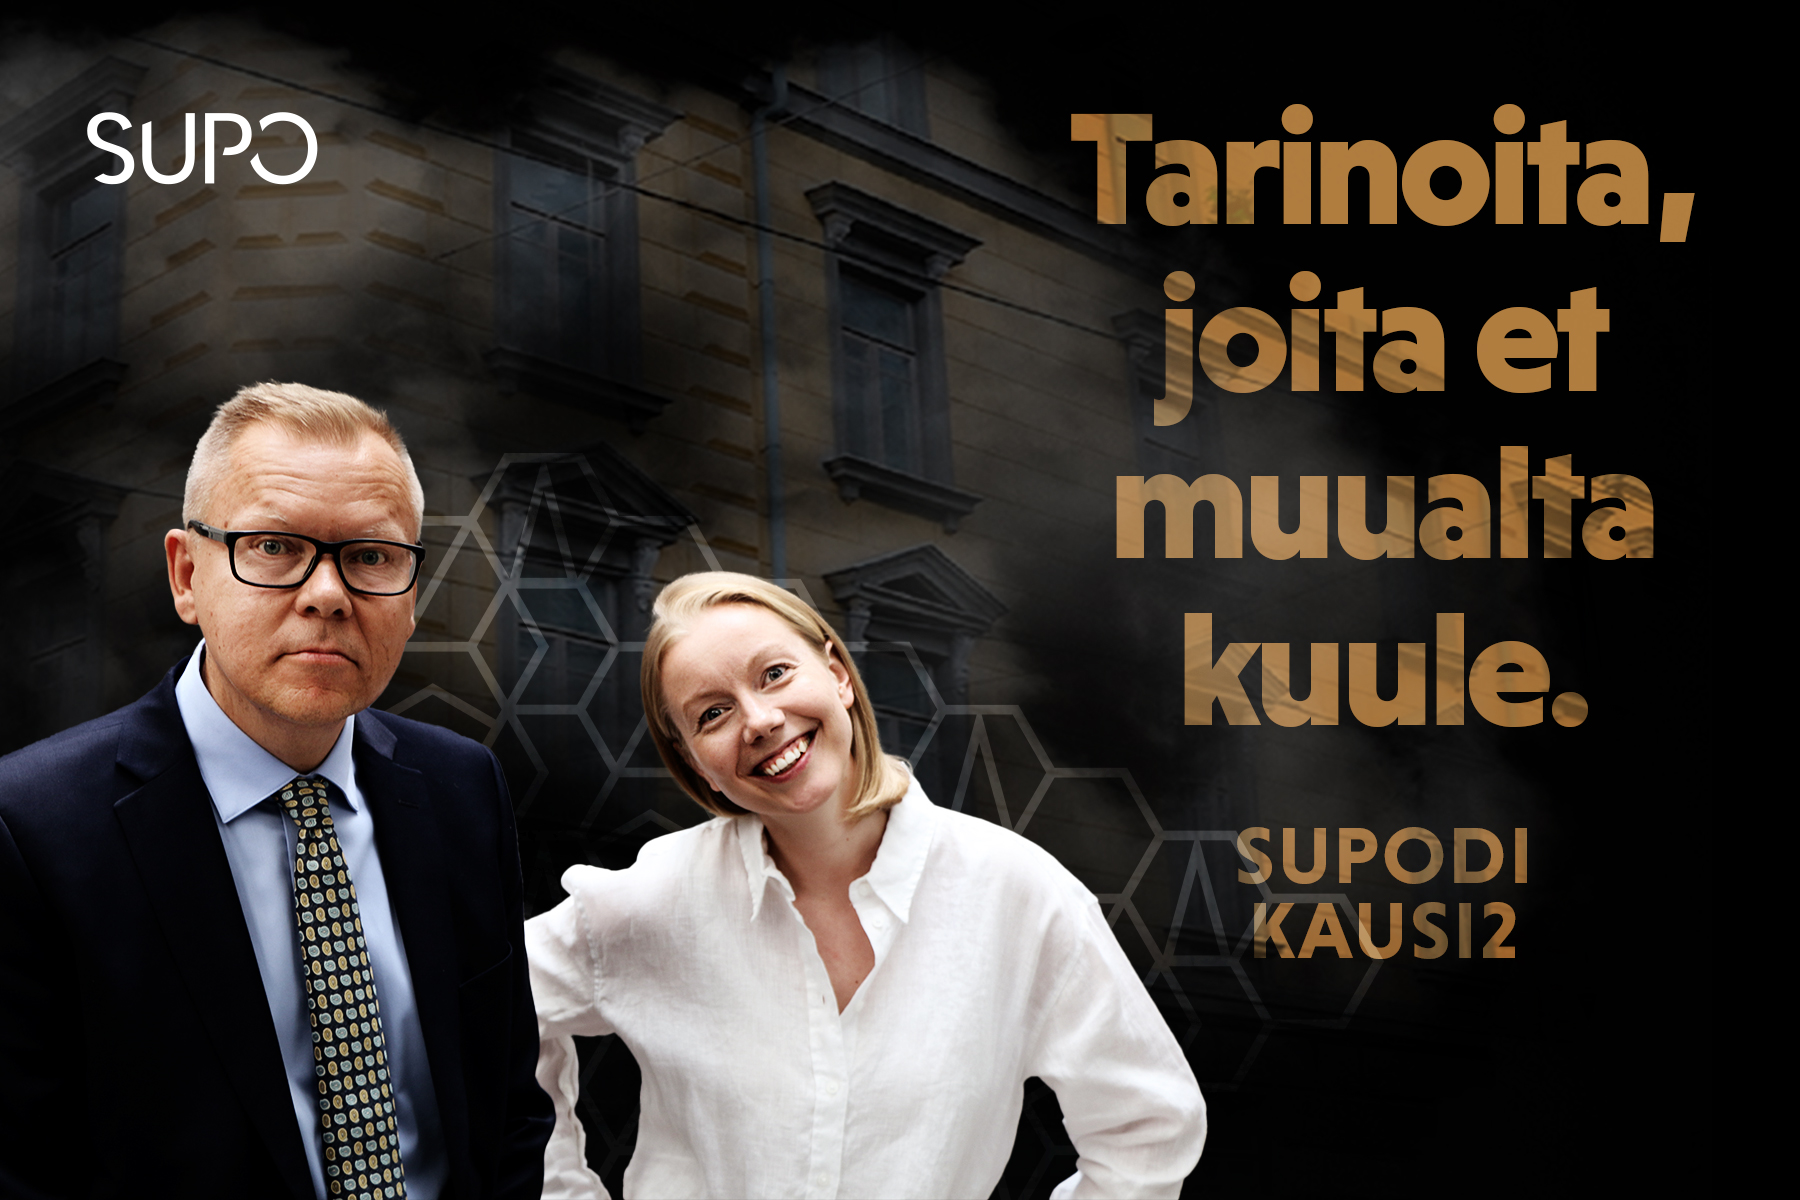 Jyri Rantala och Saana Nilsson från Supo.